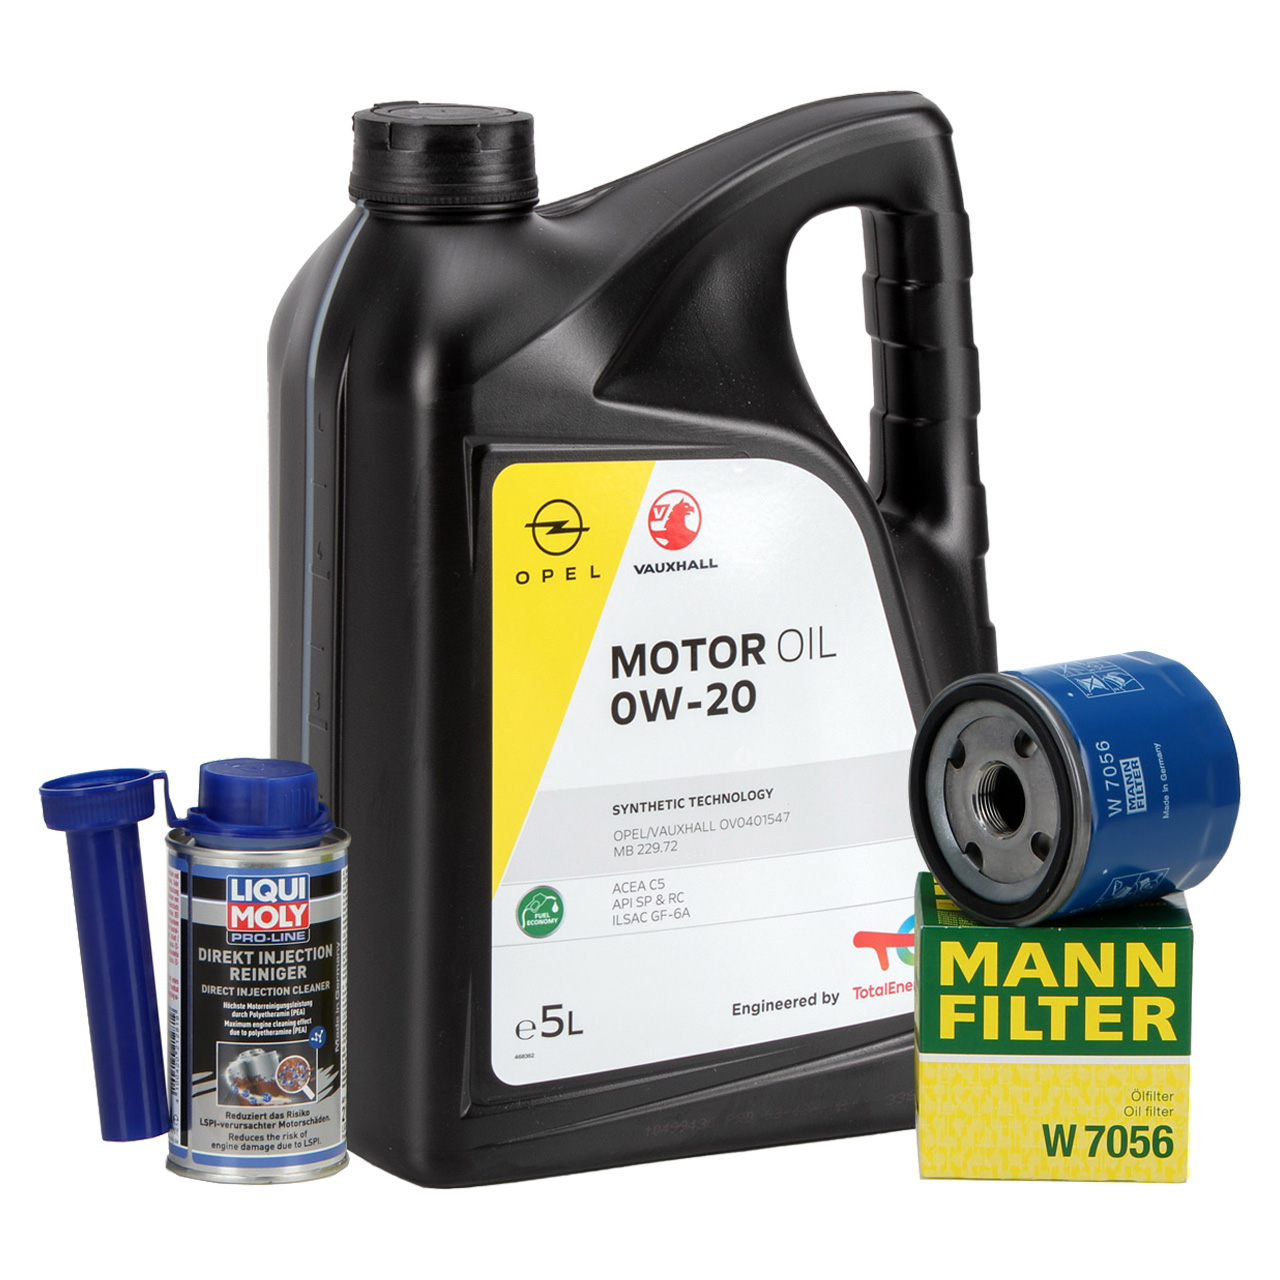 Multifunktions-Kunststoff-Langhals-Öl trichter für alle Automobil öle  Schmierstoffe Motoröle Wasser Diesel kraftstoff Kerosin usw. neu